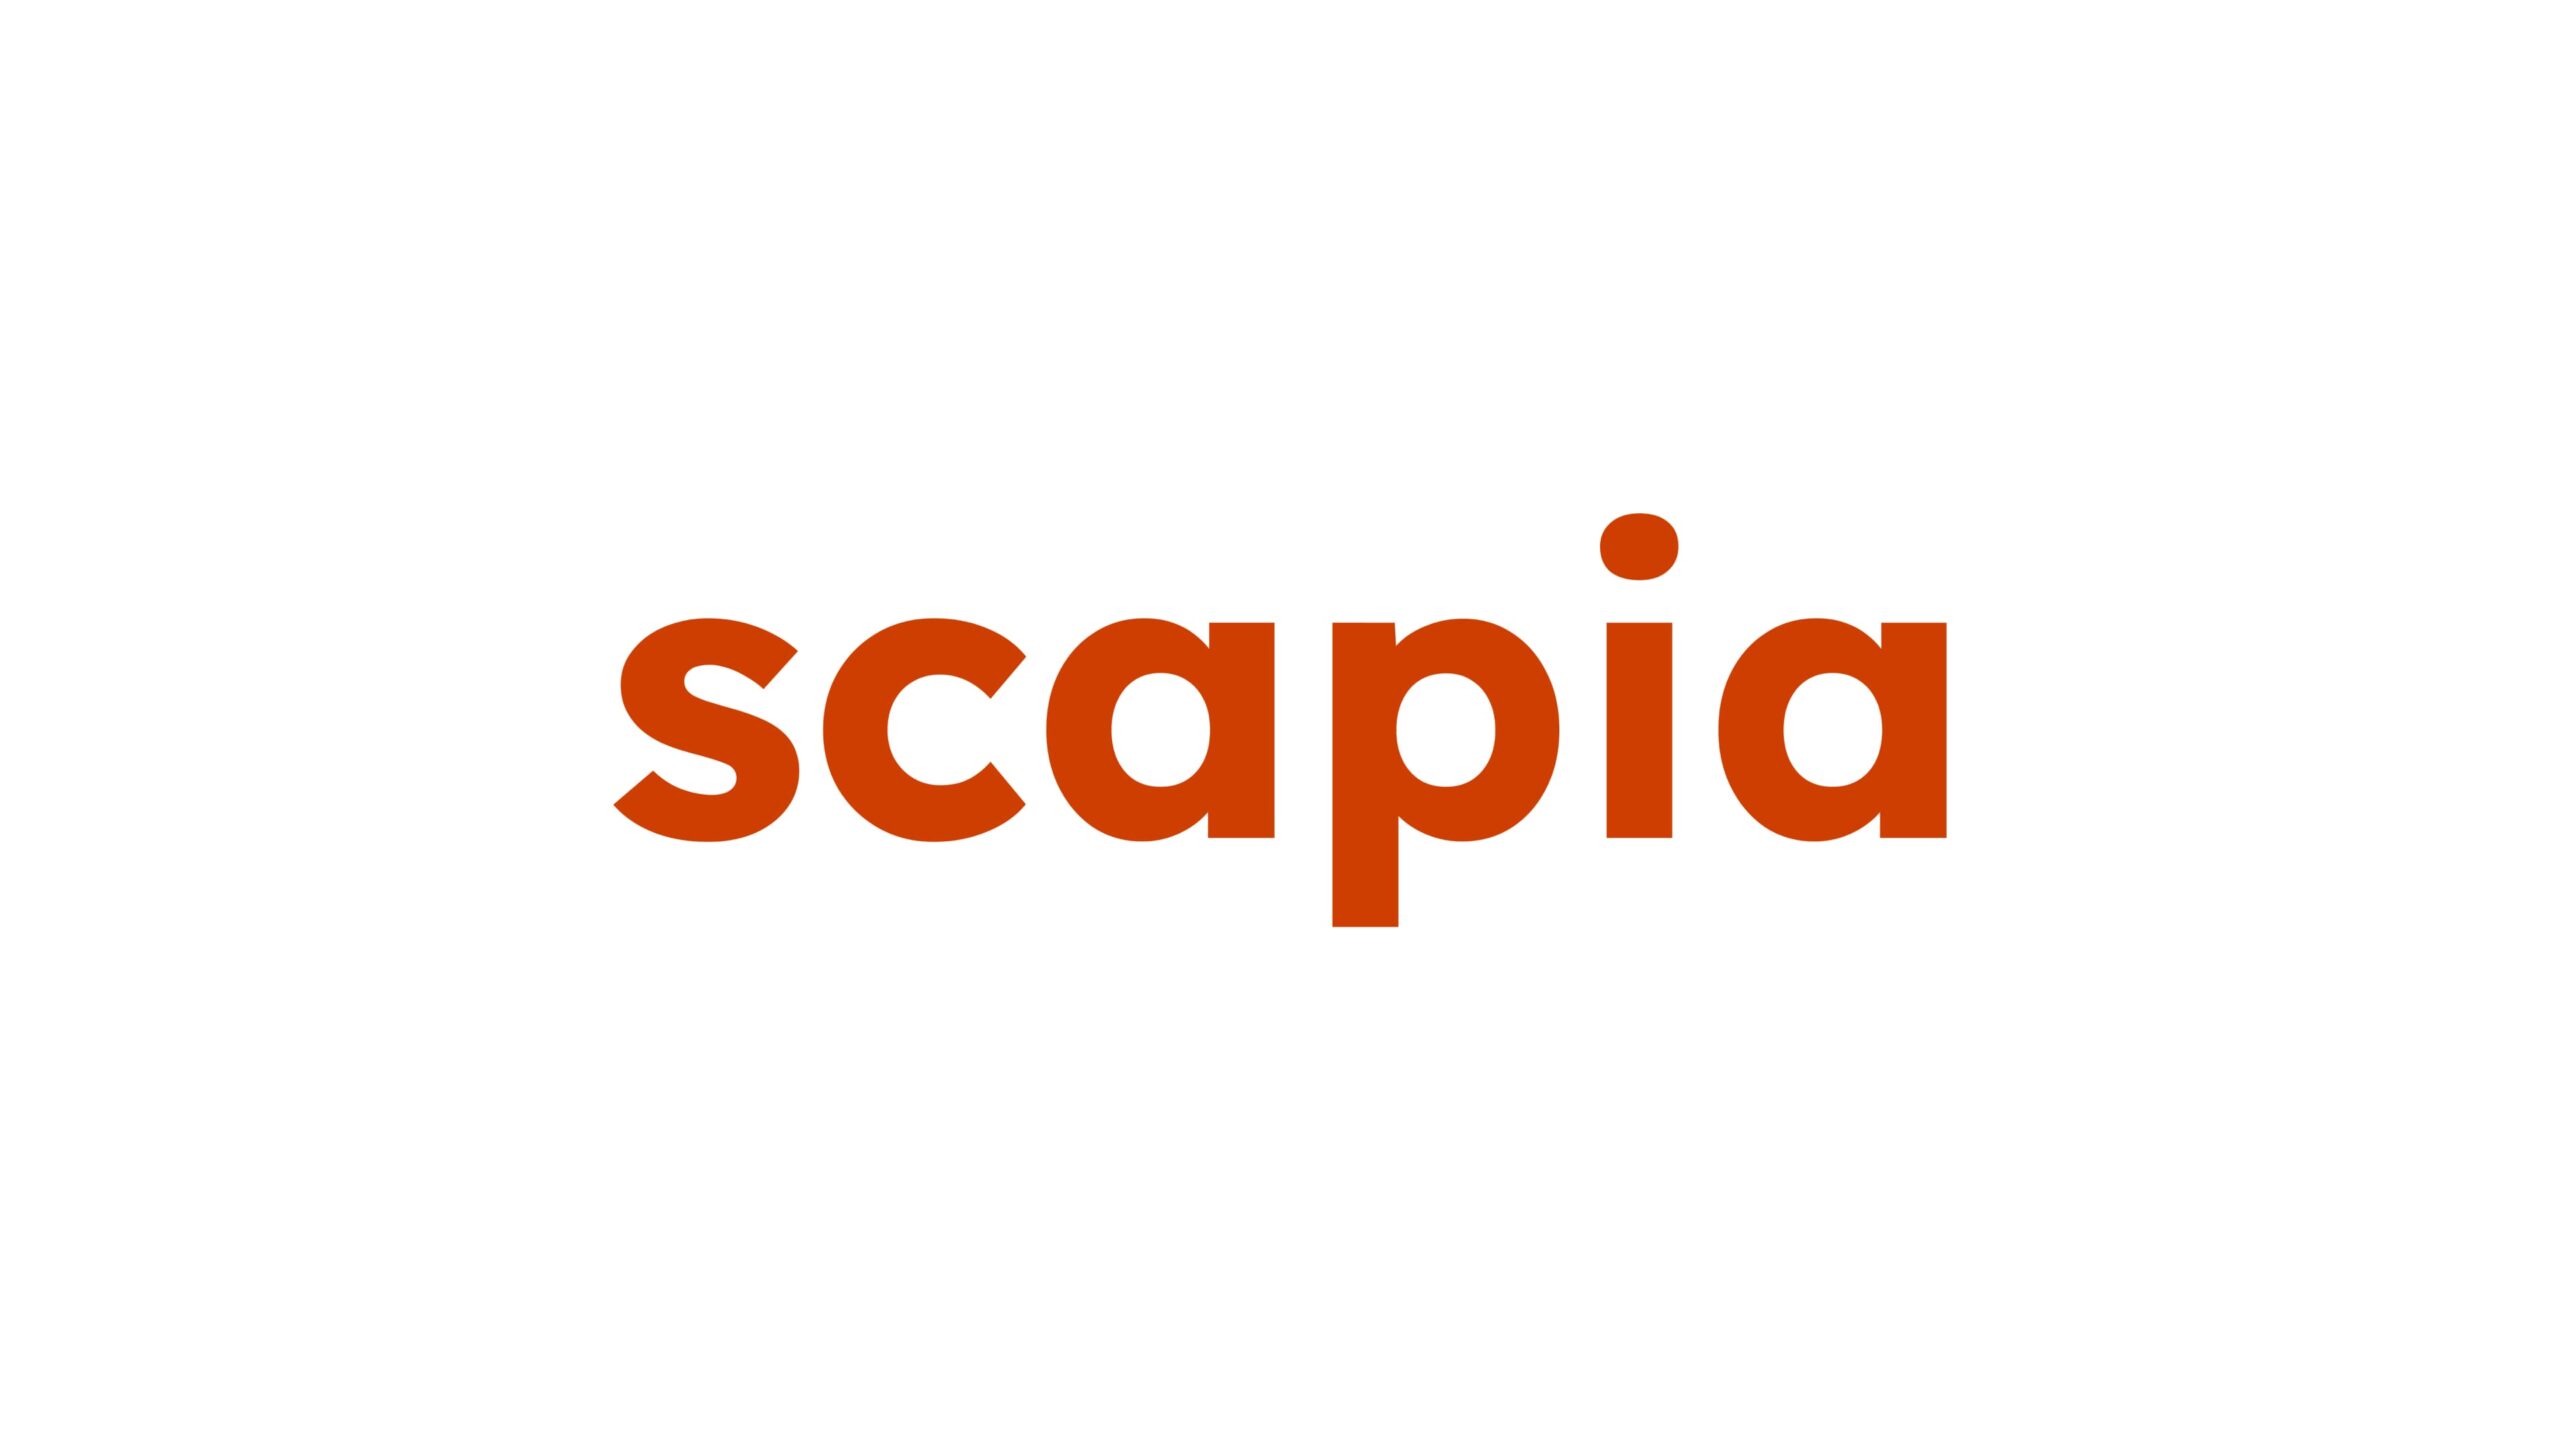 インドの旅行フィンテック企業ScapiaがシリーズAで2,300万ドルの資金を獲得